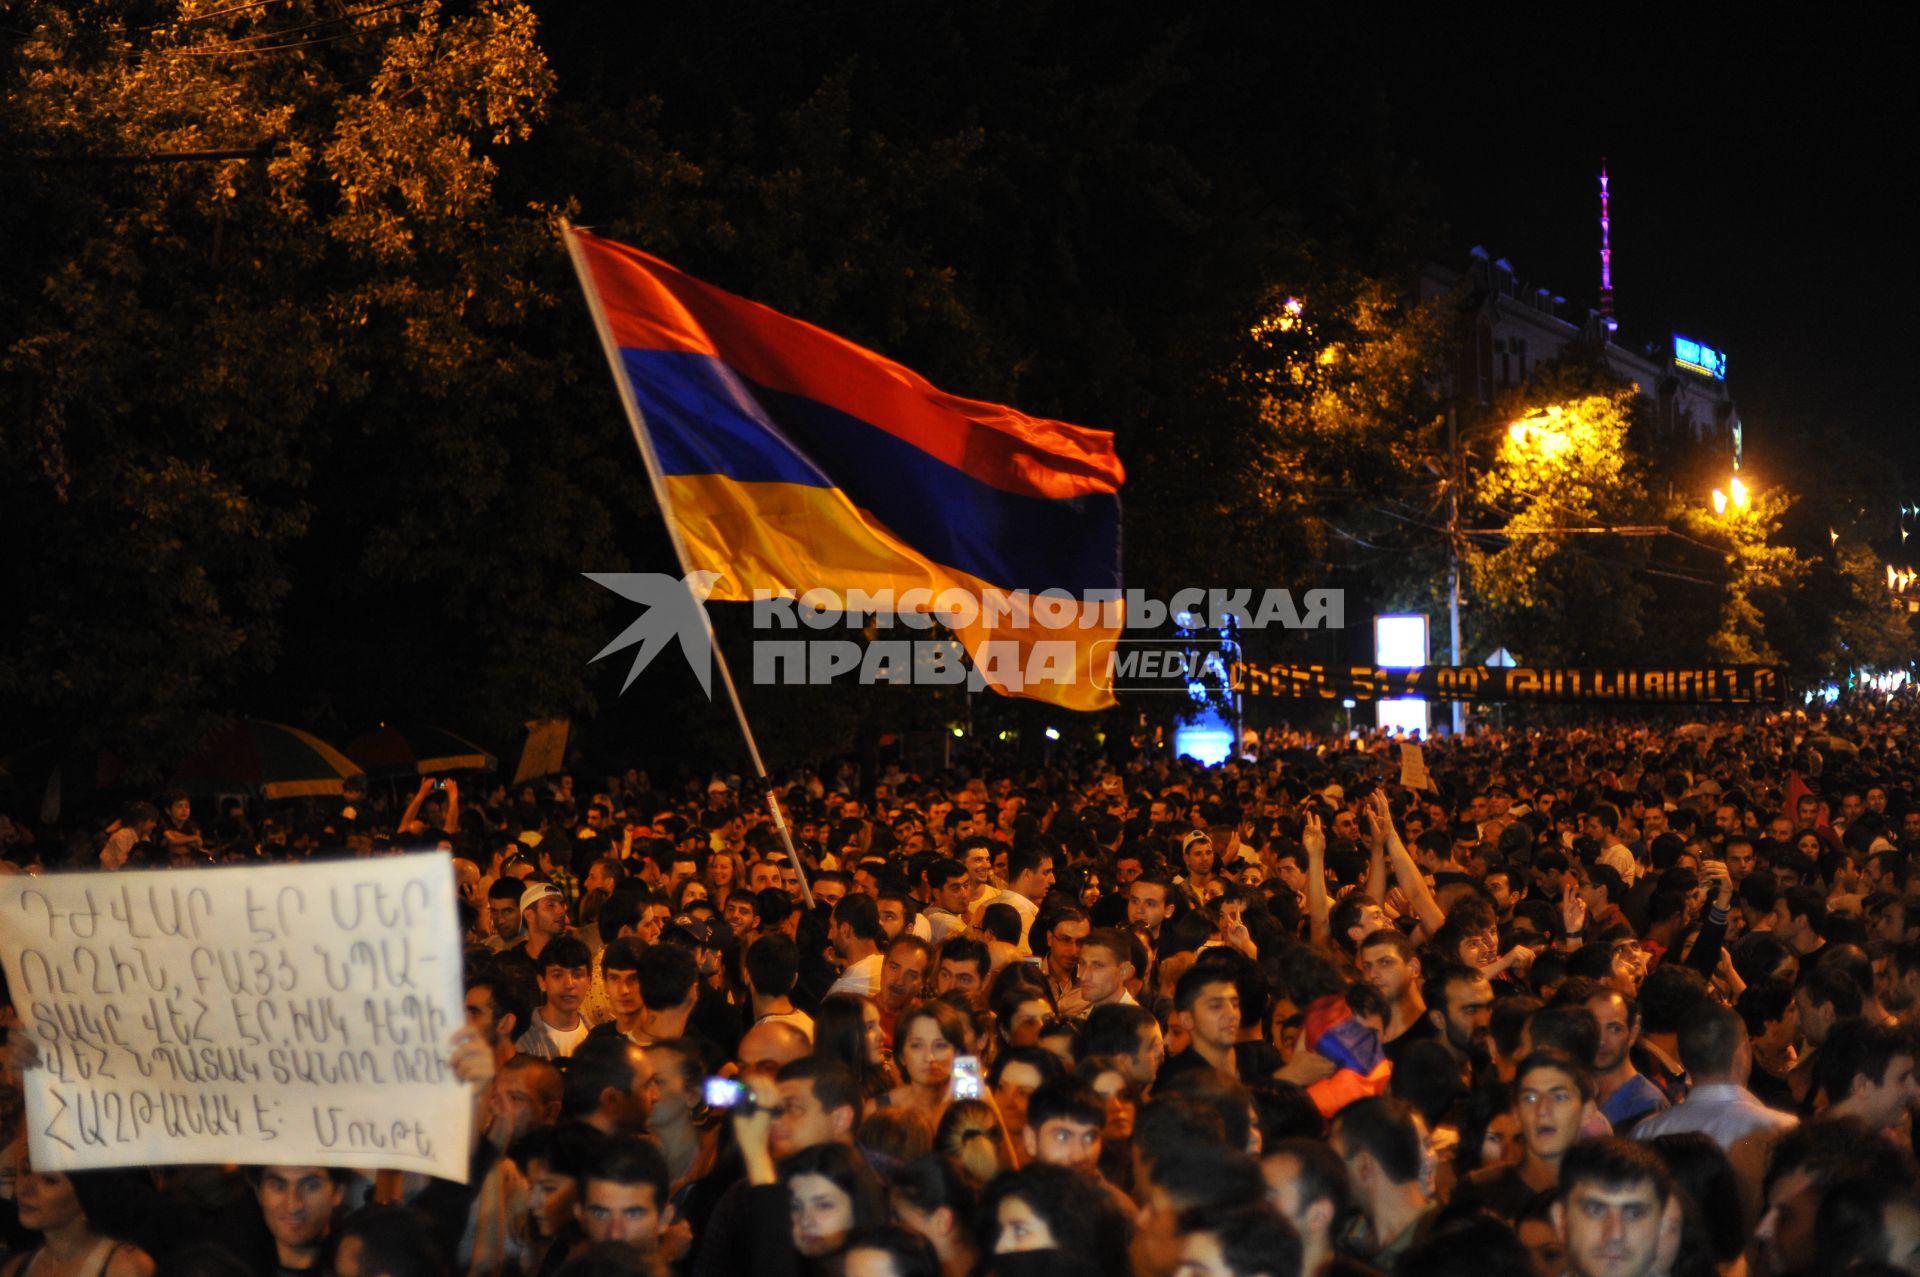 Армения, Ереван. Участники ночной акции протеста против повышения тарифов на электричество.